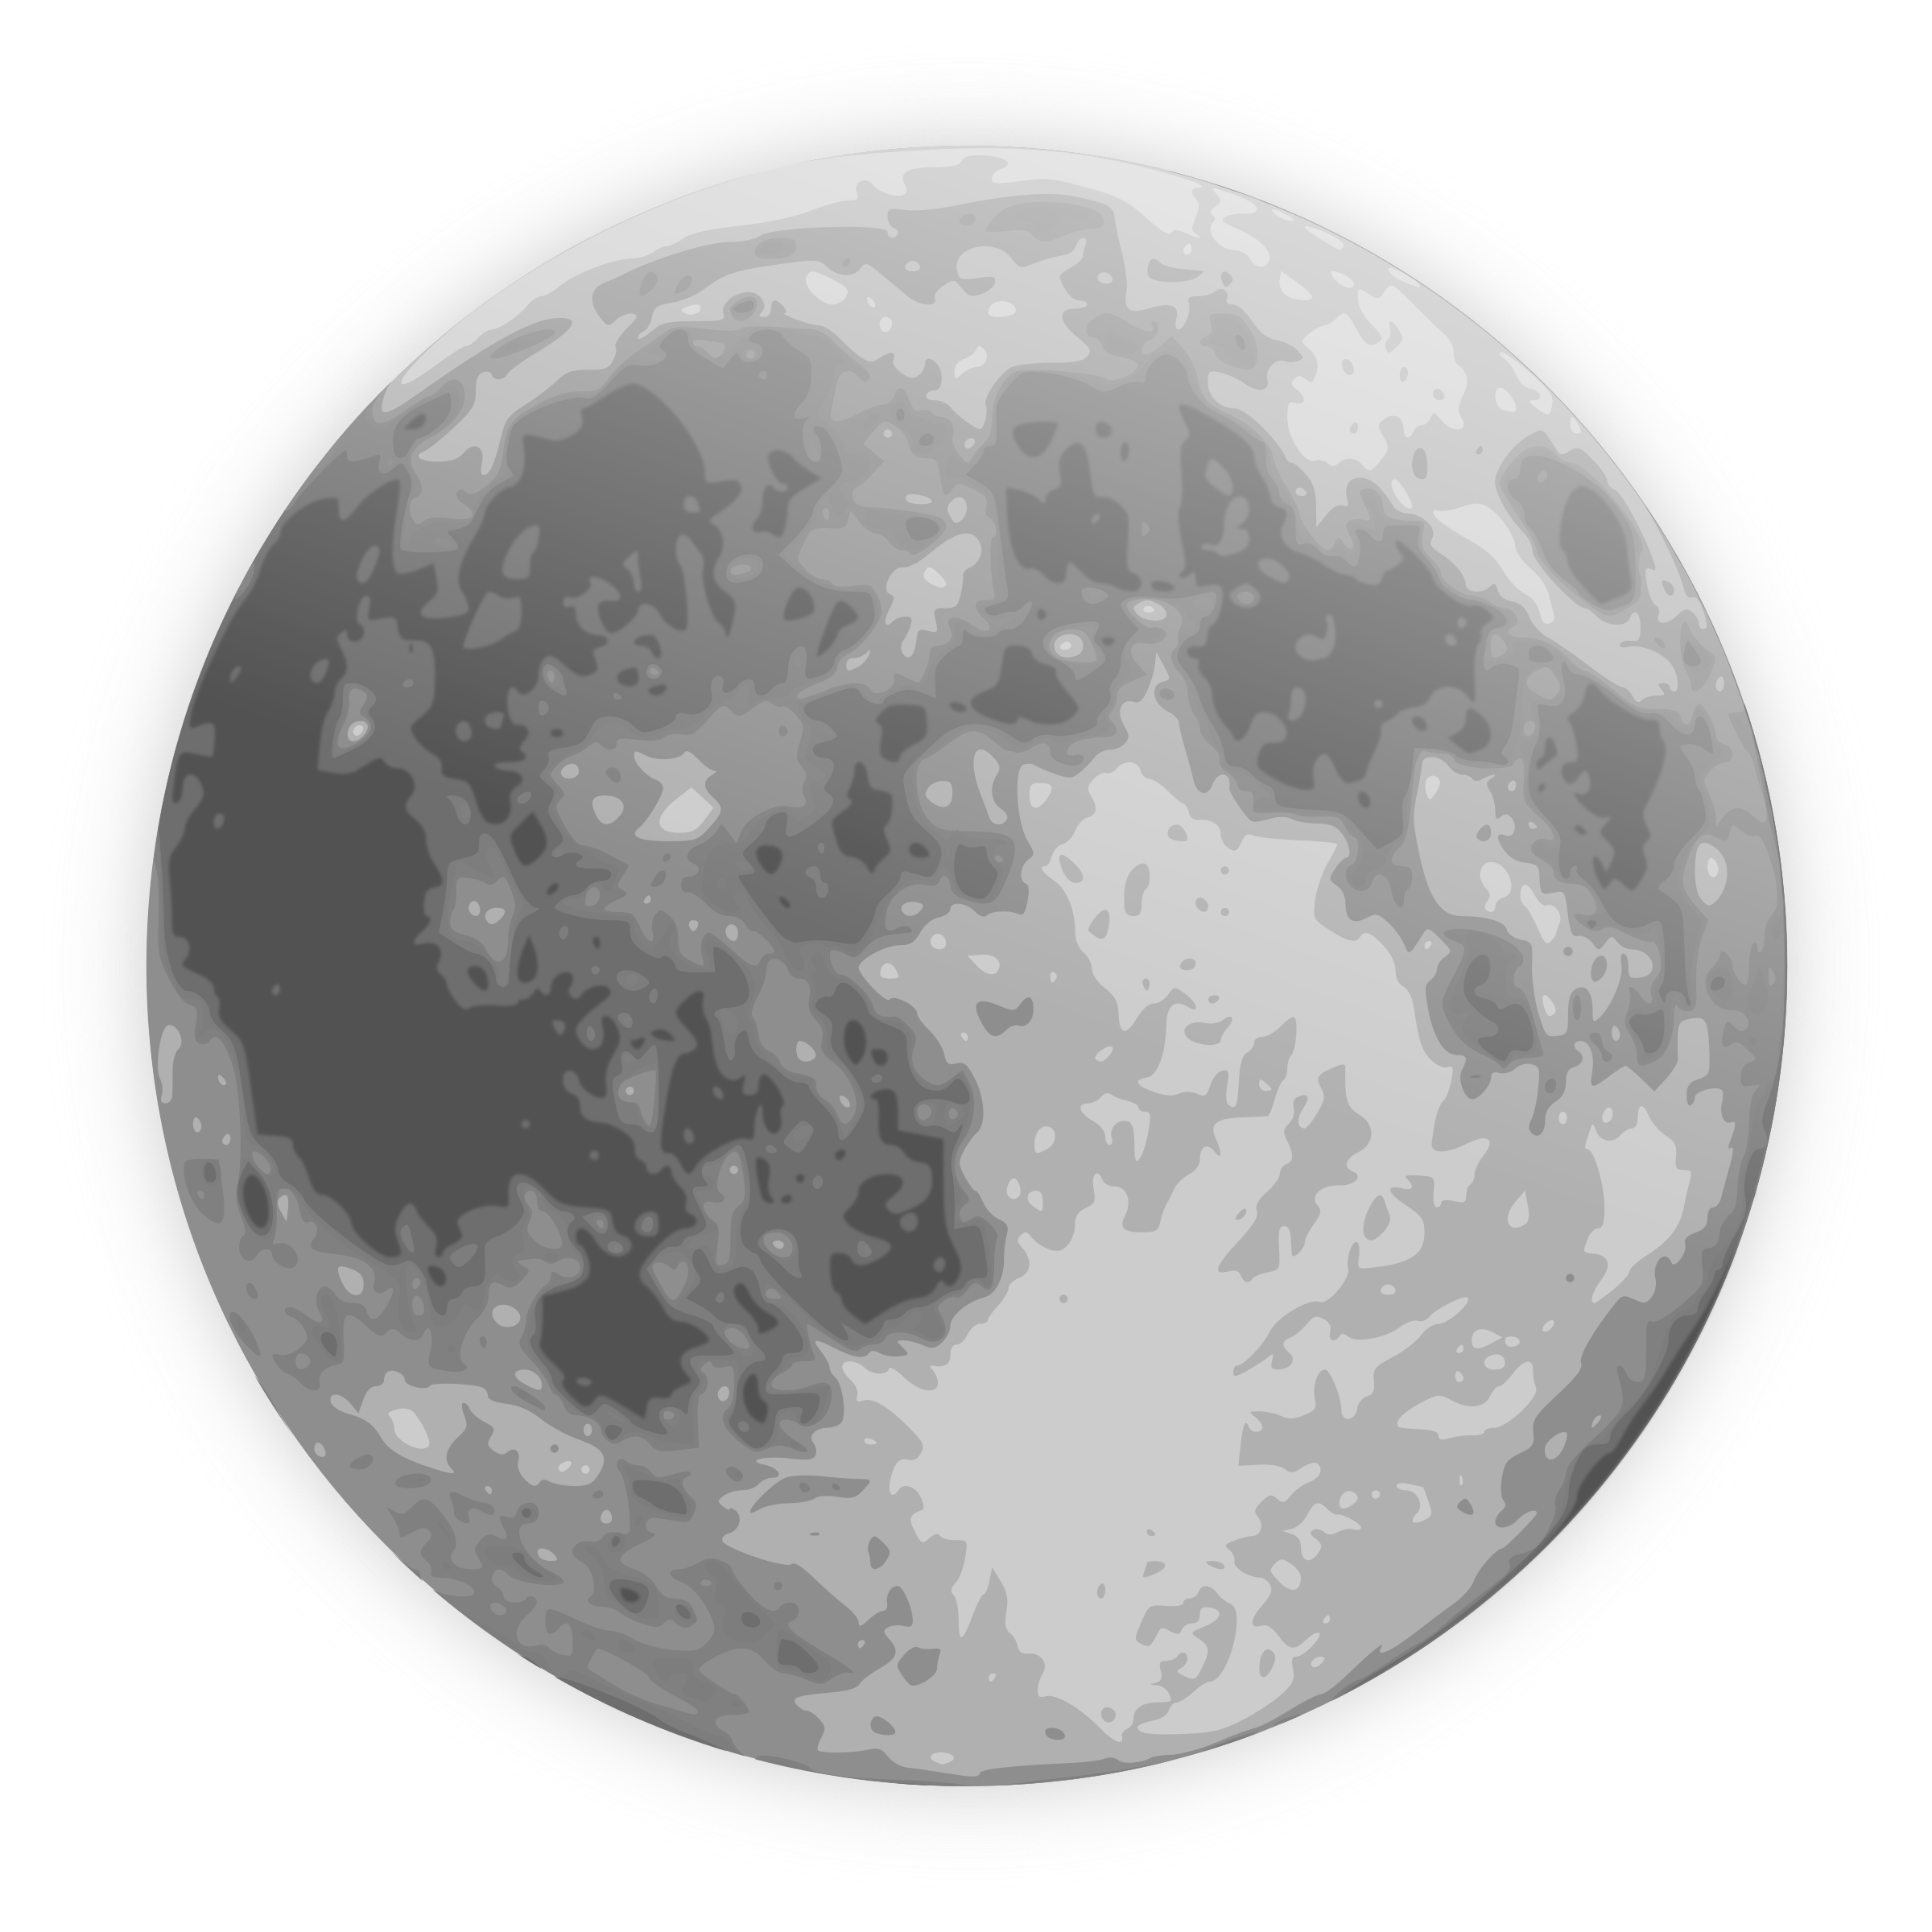 चंद्रमा